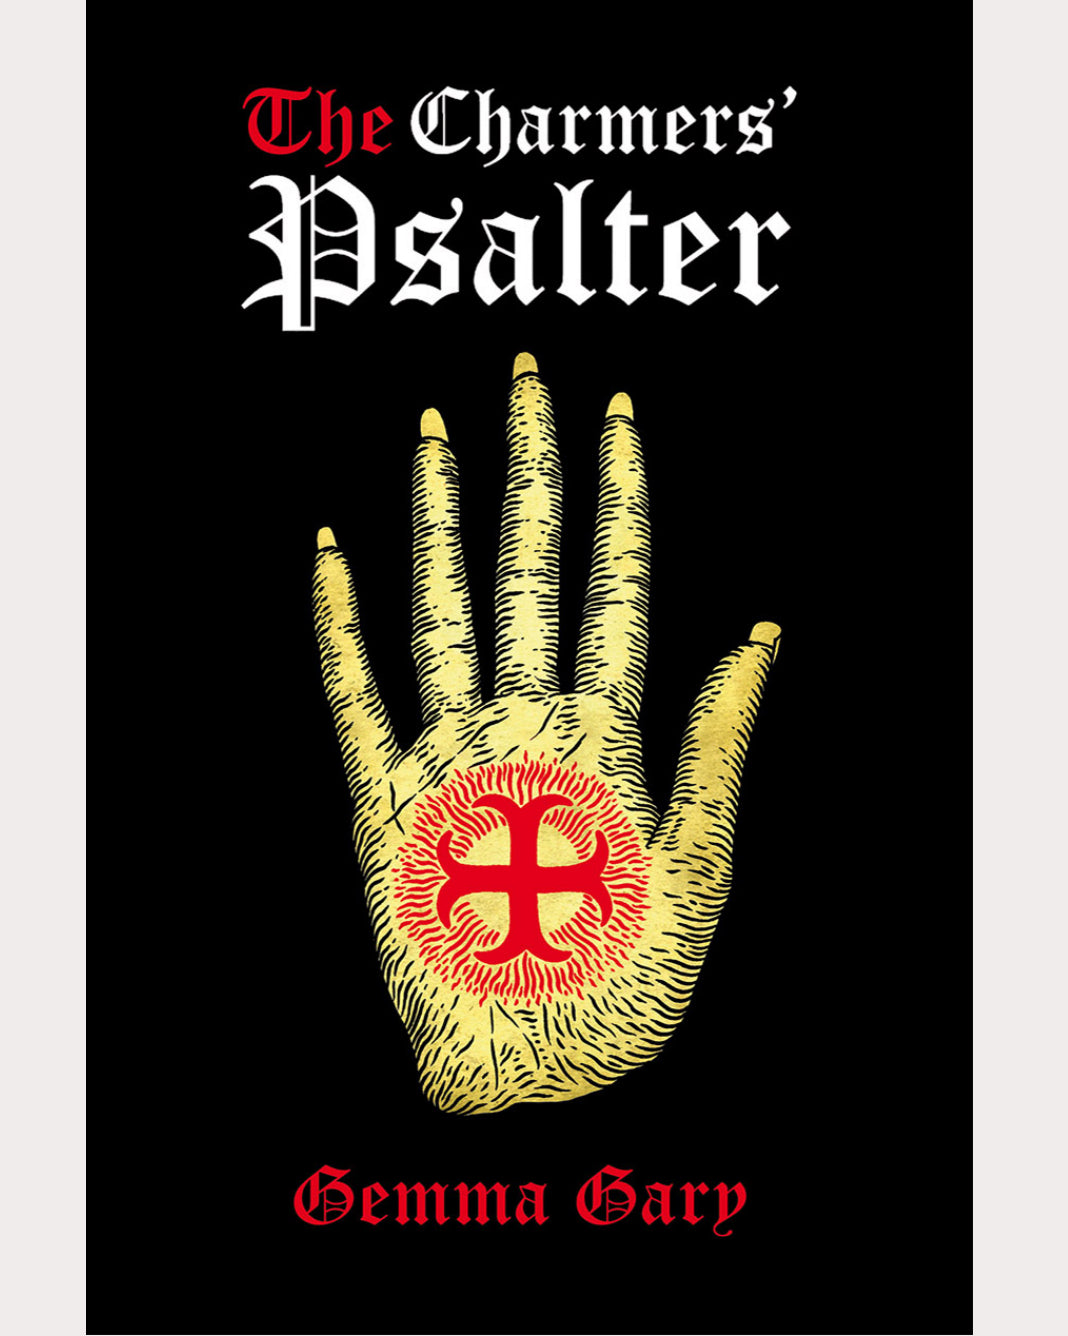 The Charmer's Psalter